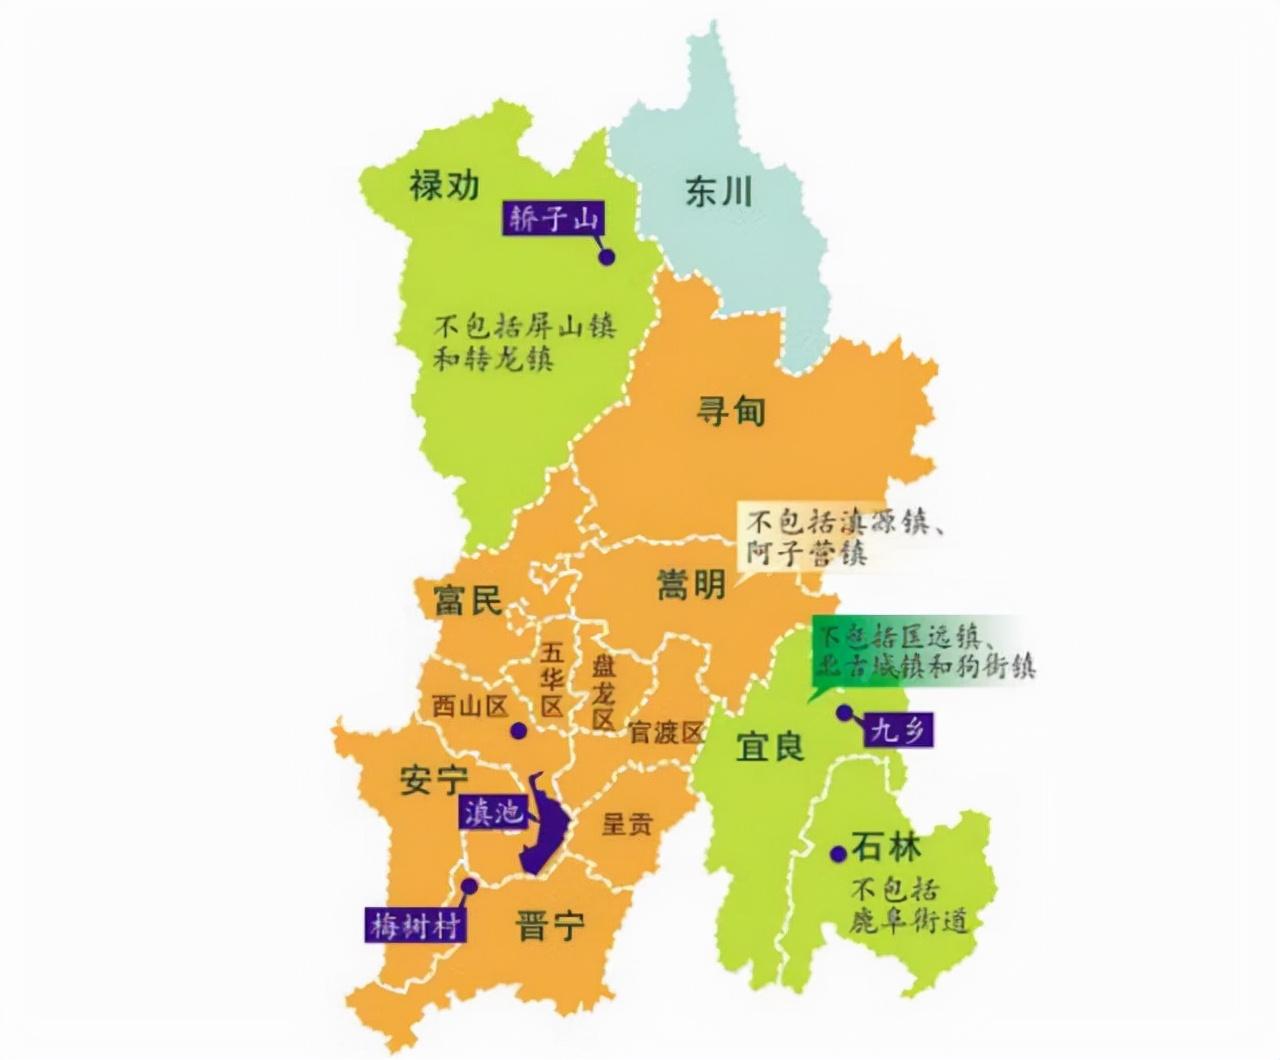 昆明在哪个省哪个地区,昆明在中国地图的什么位置